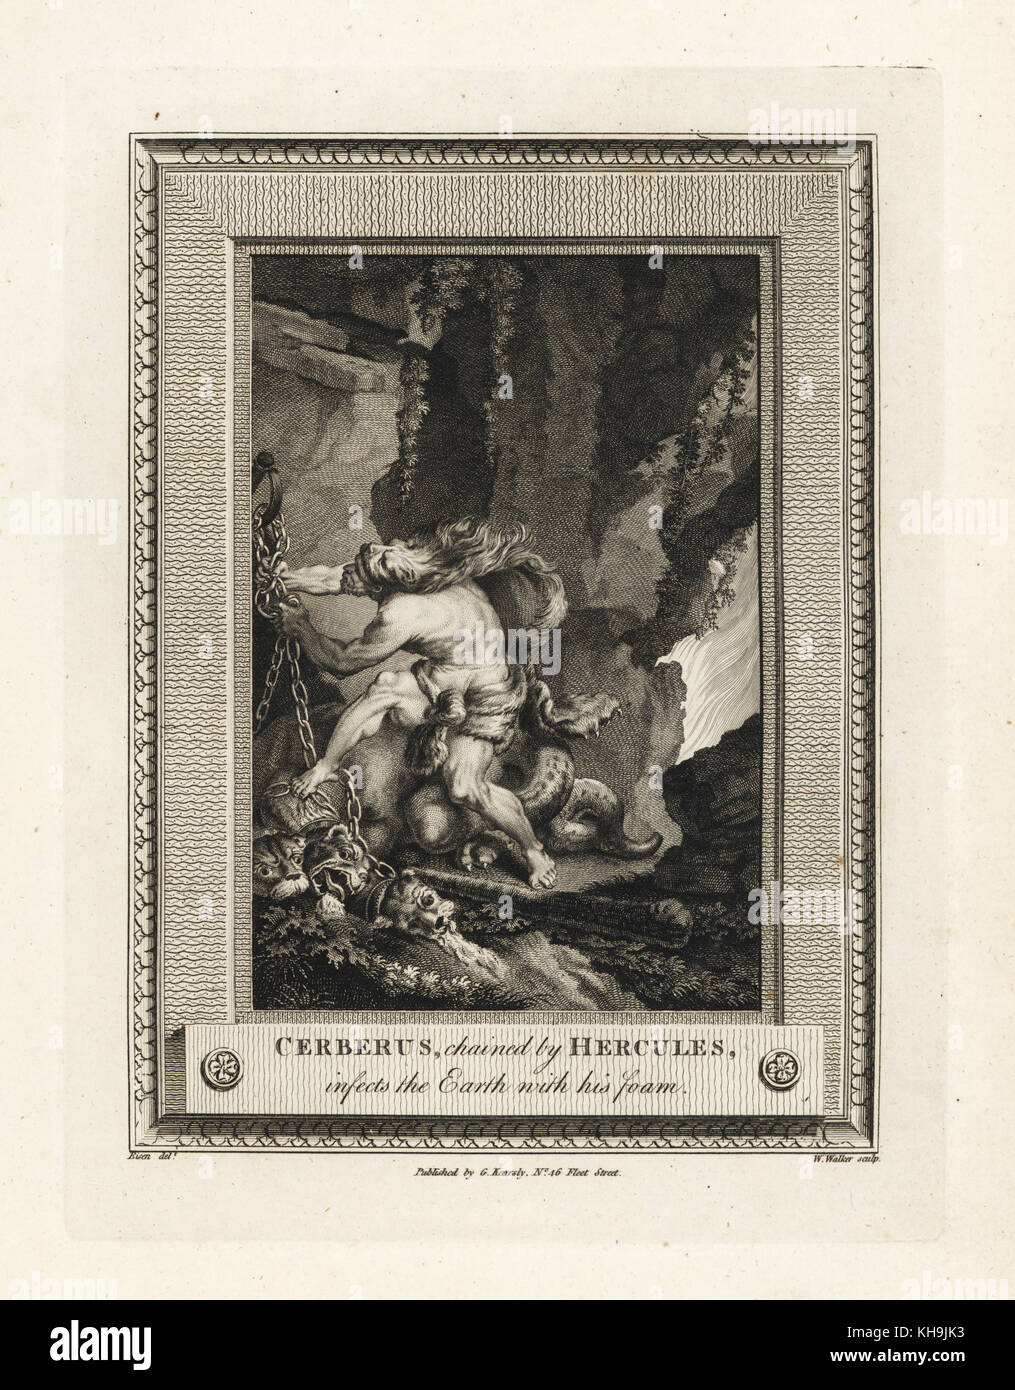 Cerberus, incatenato da Hercules, infetta la terra con la sua schiuma. Incisione su rame di W. Walker dopo una illustrazione da Charles Eisen dalla piastrina di rame rivista mensile o Tesoro, G. Kearsley, Londra, 1778. Foto Stock